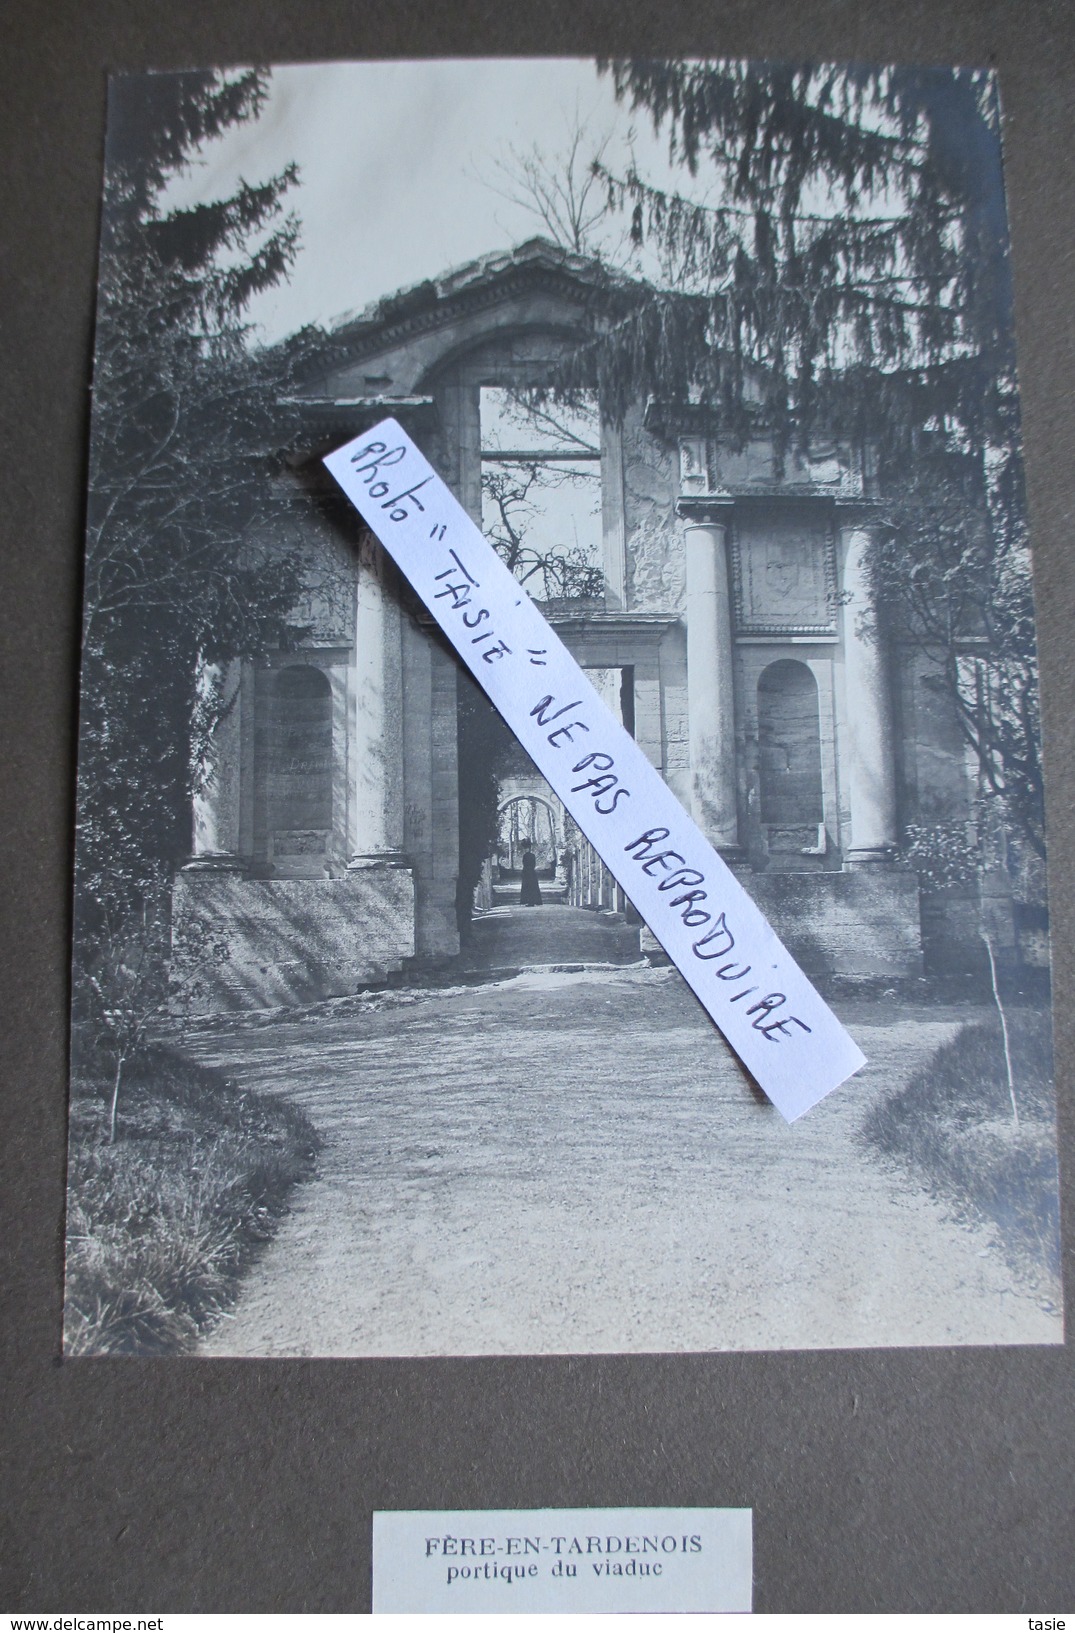 MARNE / AISNE exceptionnel album de 47 photos  FISMES et sa région ( BLANZY, COURVILLE, BAZOCHES...........) vers 1900